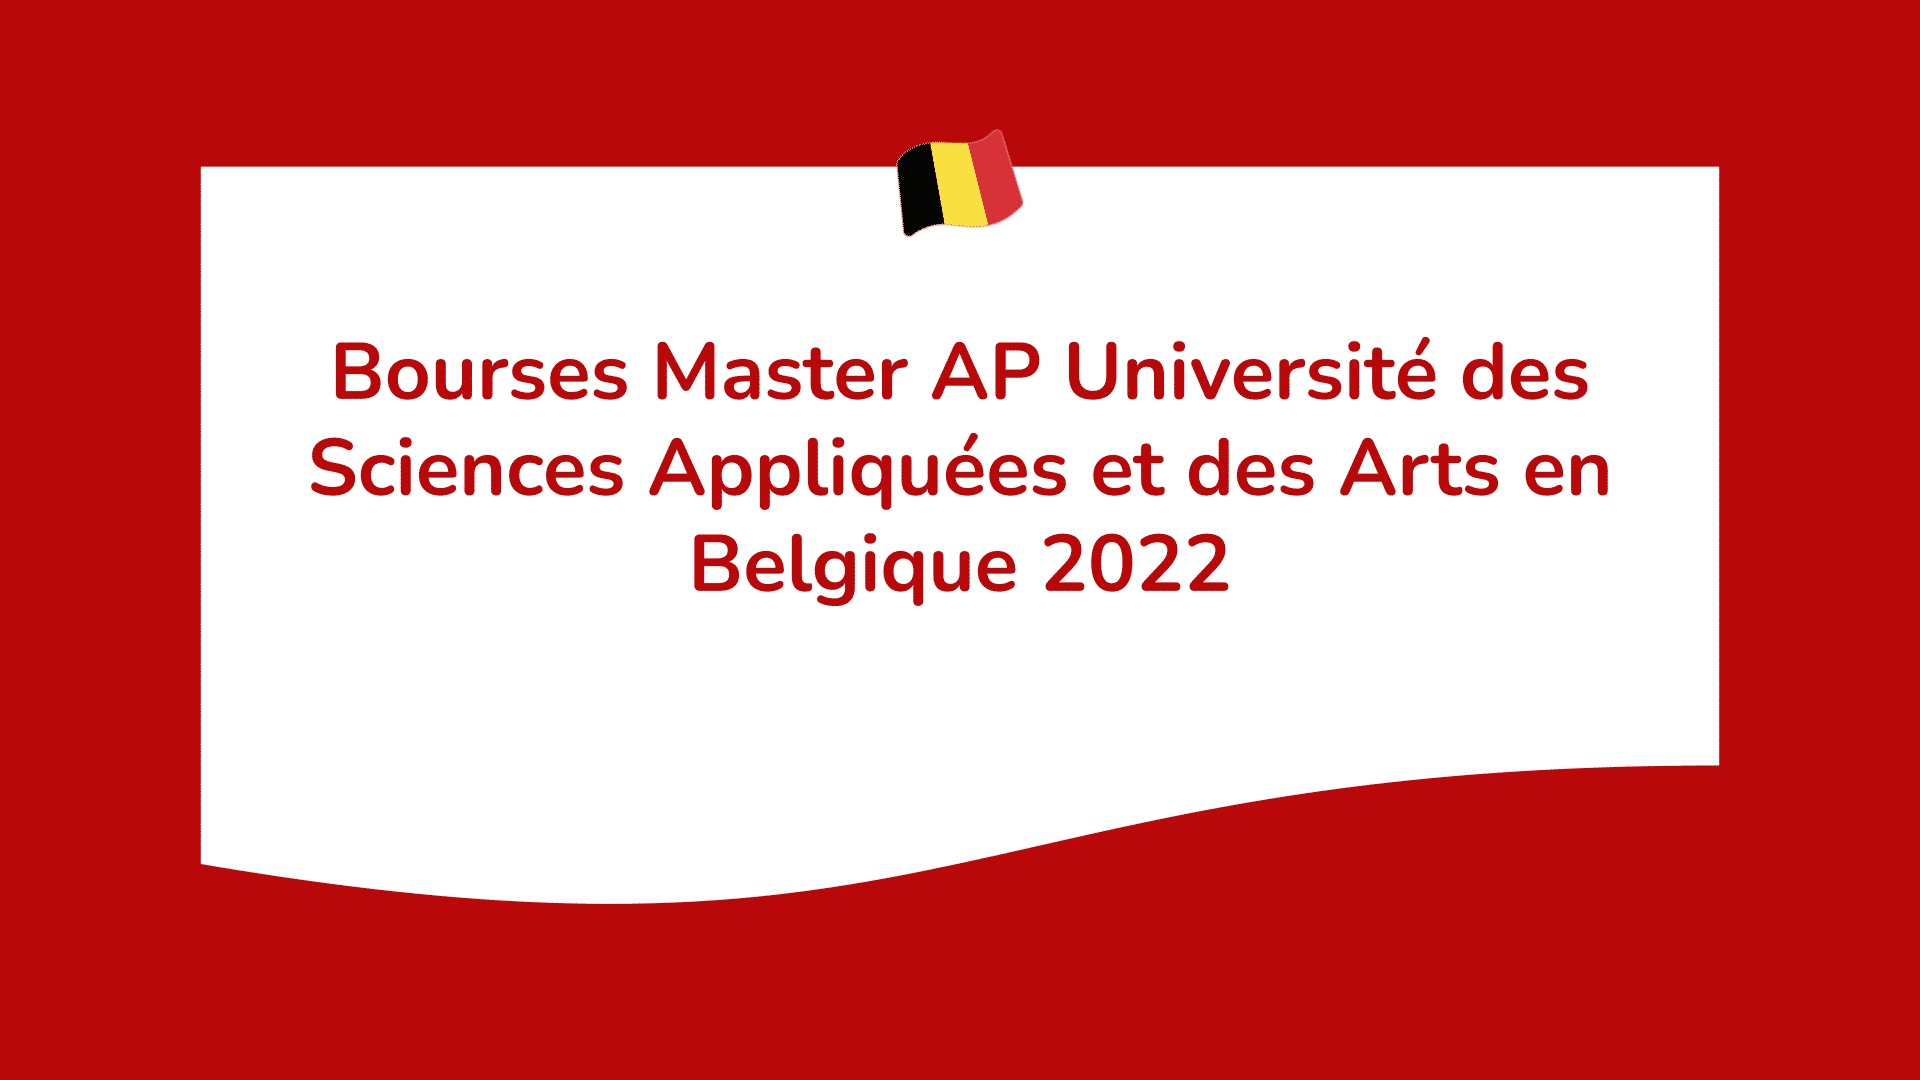 Bourses Master AP Université des Sciences Appliquées et des Arts